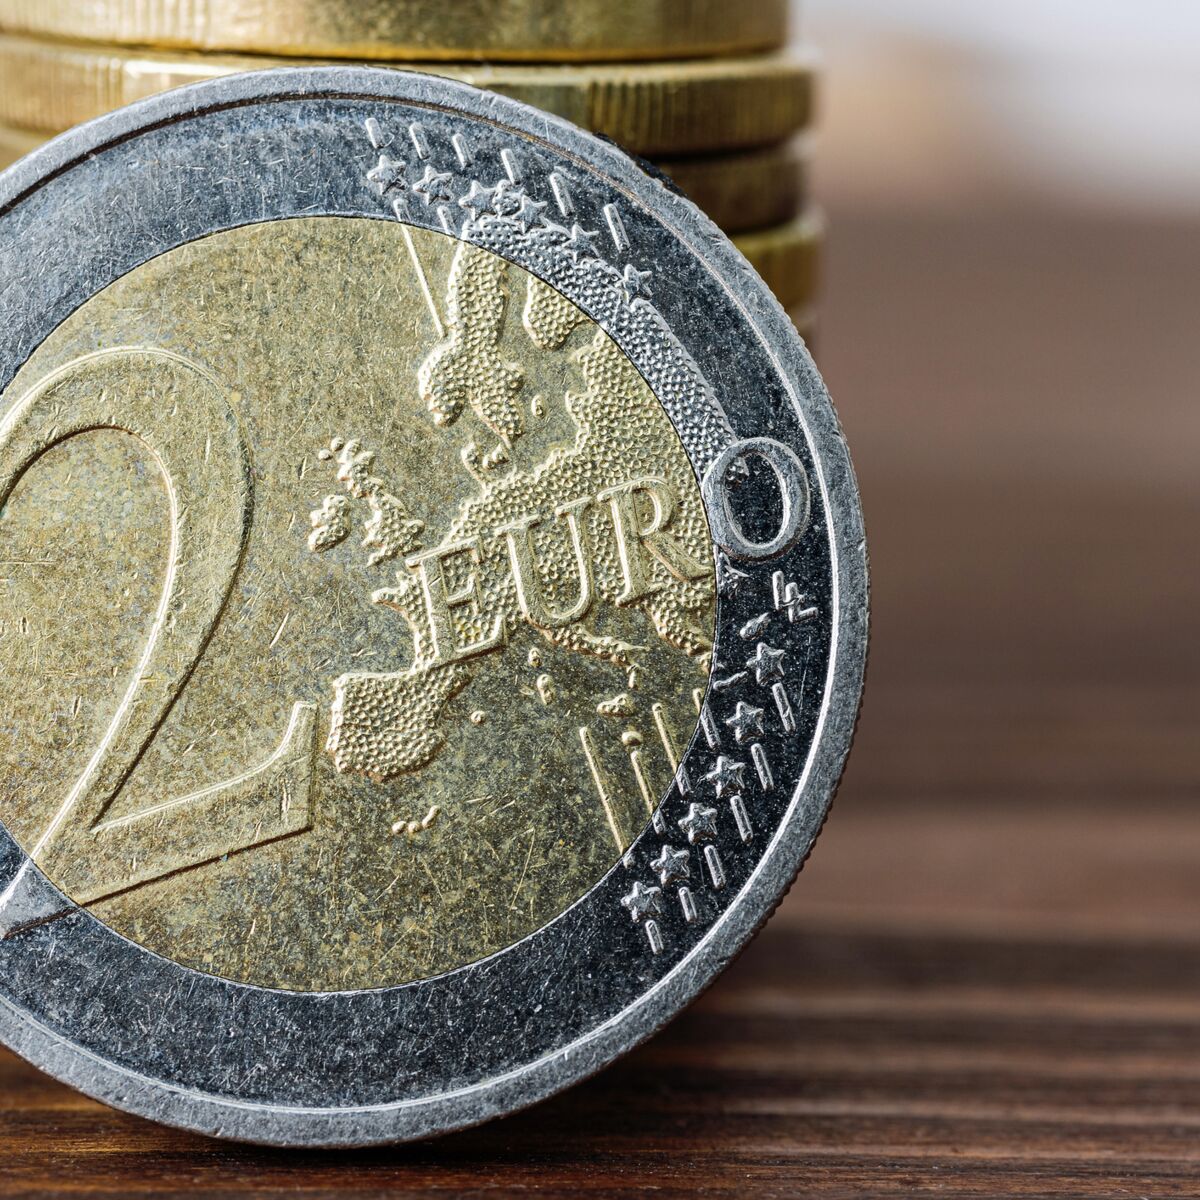 Vérifiez votre porte-monnaie : ces pièces de 2 euros rares valent cher ! :  Femme Actuelle Le MAG